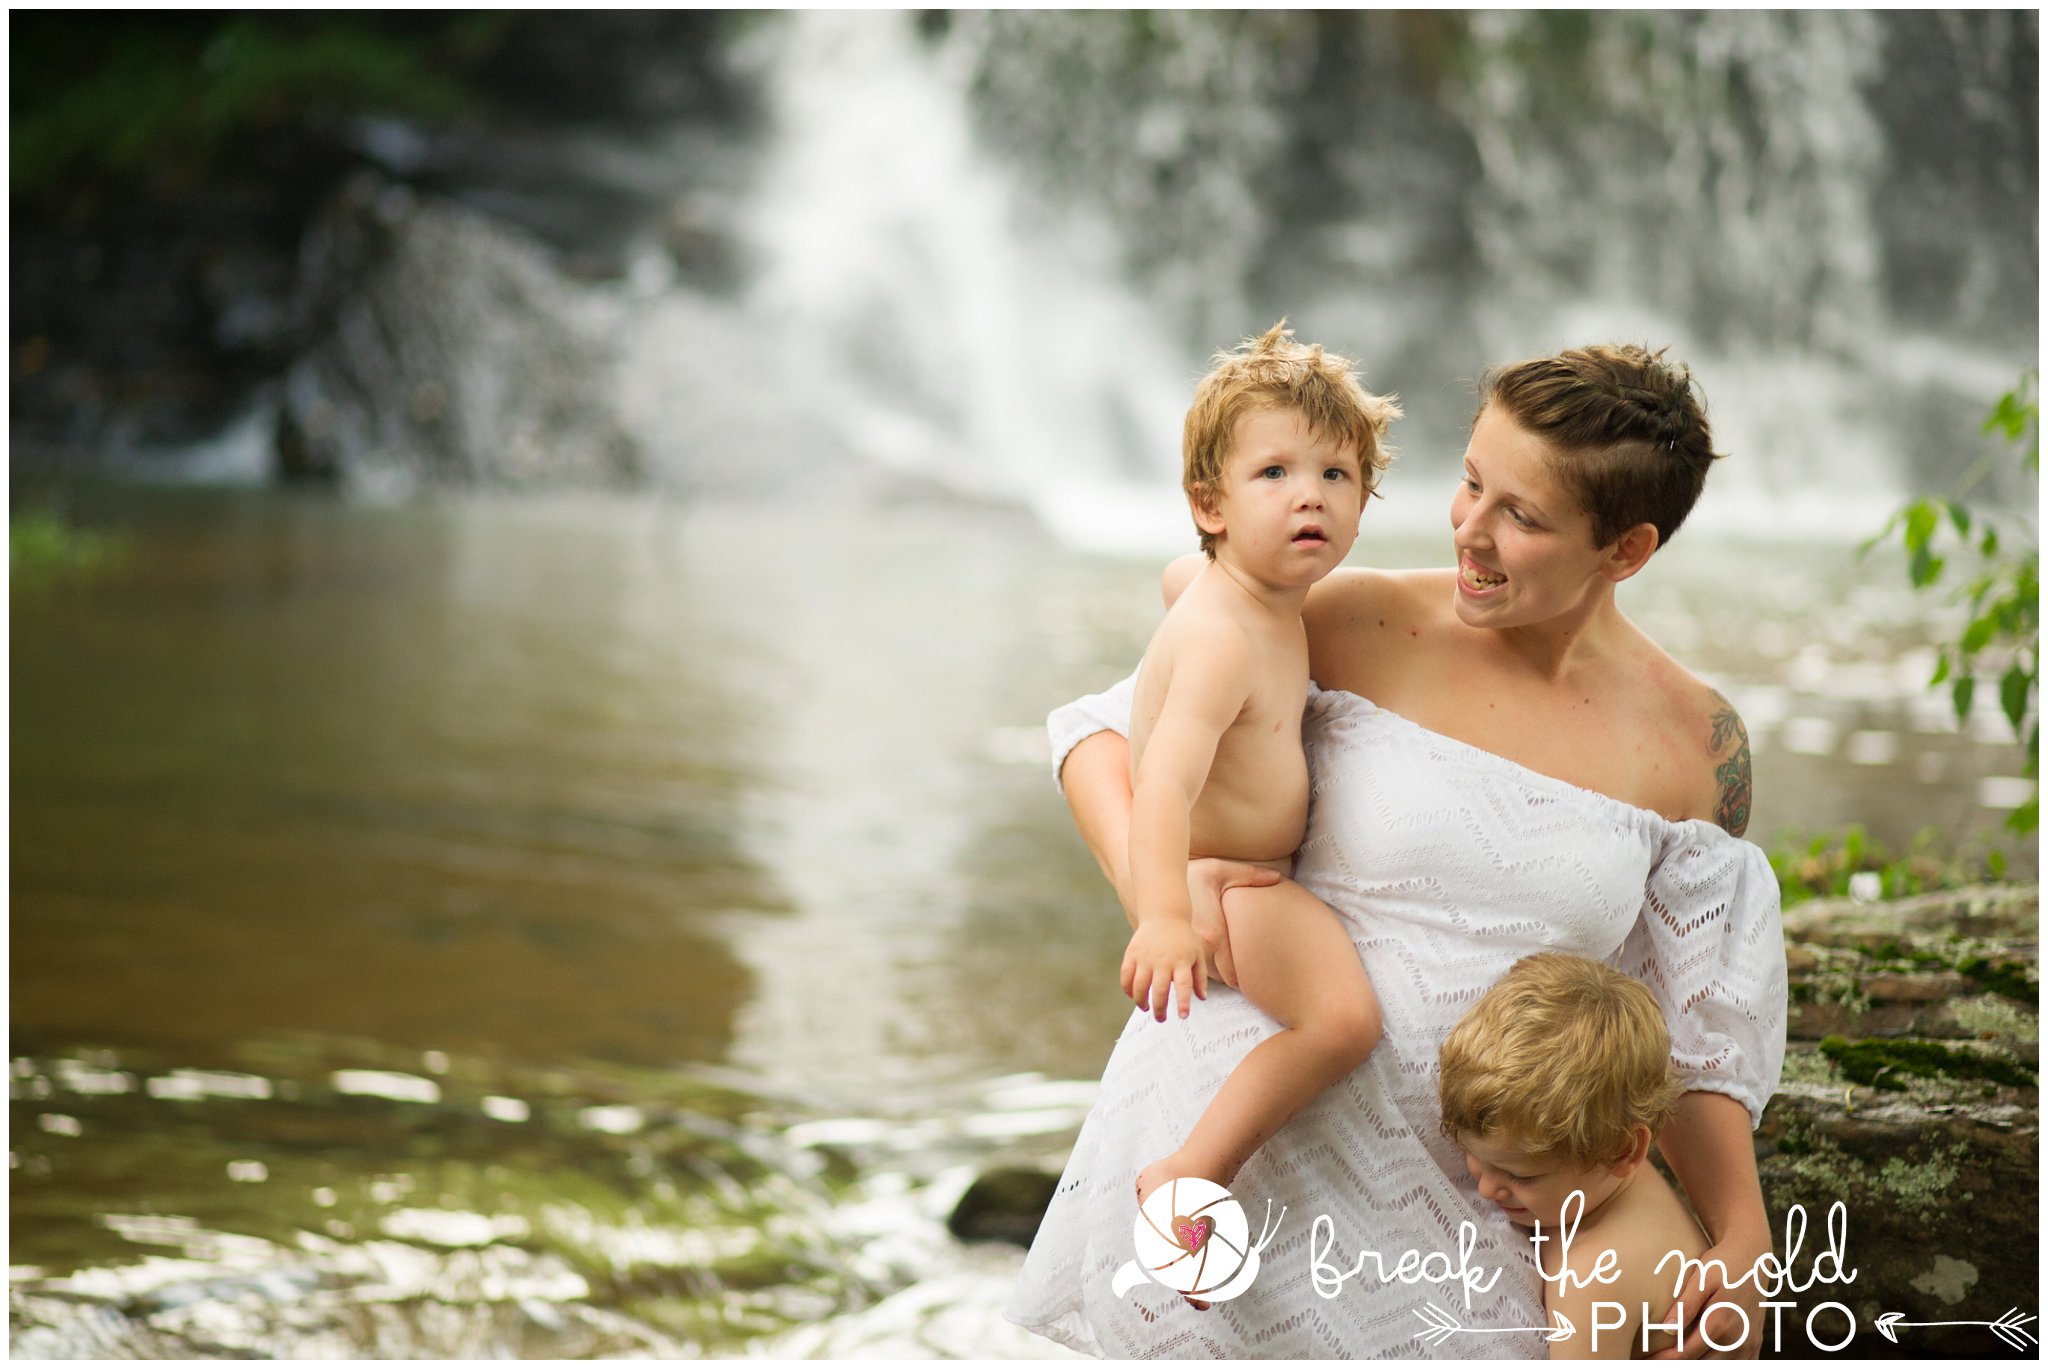 break-the-mold-photo-nursing-mothers-waterfall-women-celebrate-beauty_5452.jpg